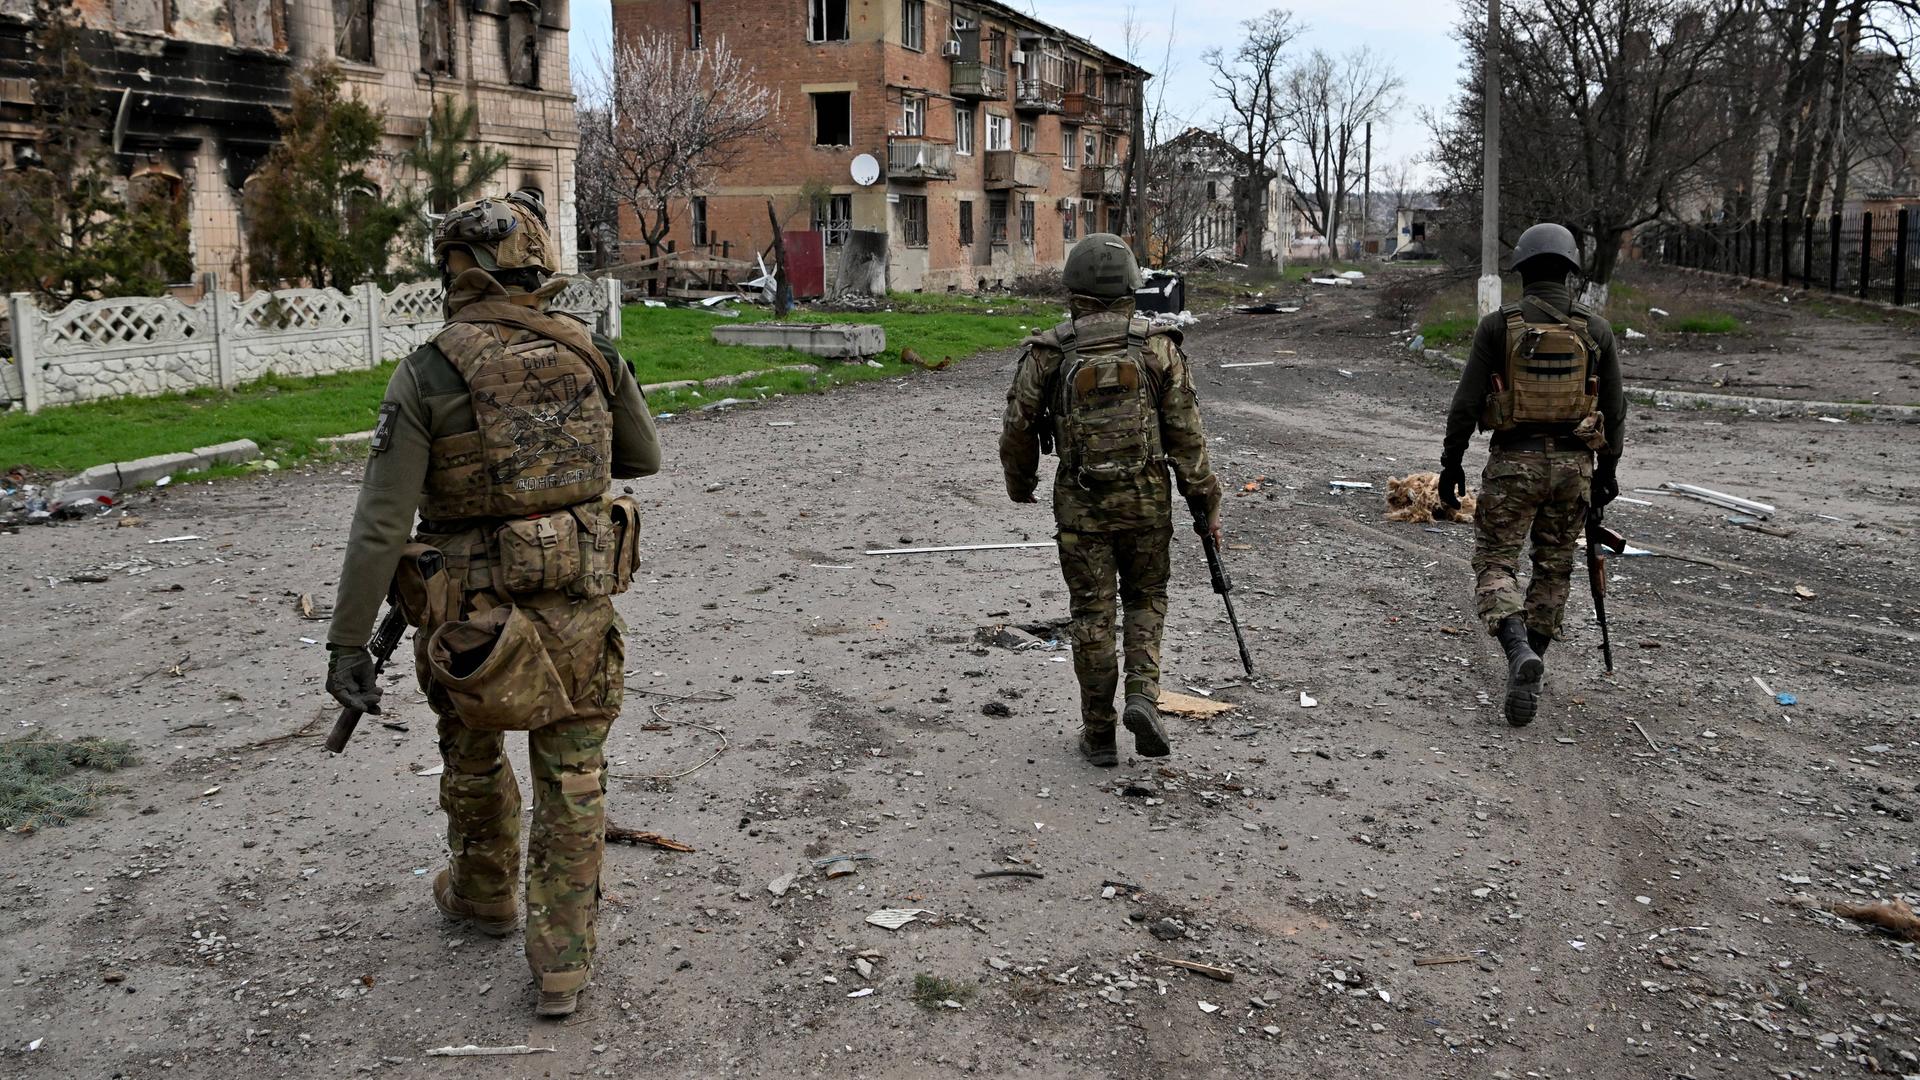 Drei bewaffnete Männer in Soldatenuniformen patrouillieren durch eine vom Krieg schwer beschädigte Kleinstadt.